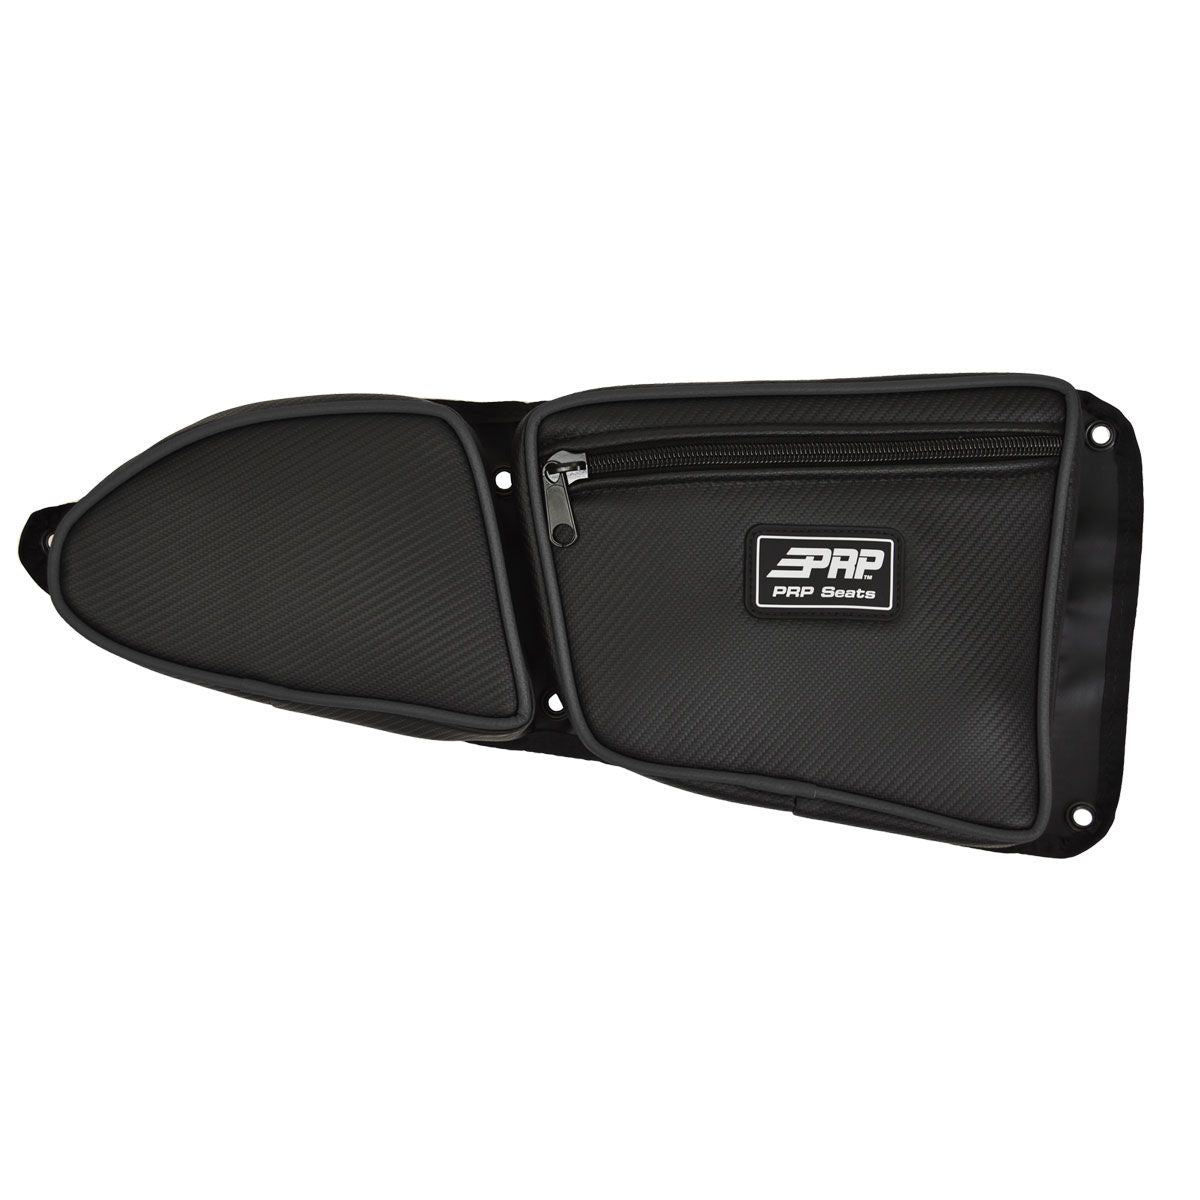 PRP Polaris RZR Front Door Bag with Knee Pad (Passenger Side)- Black